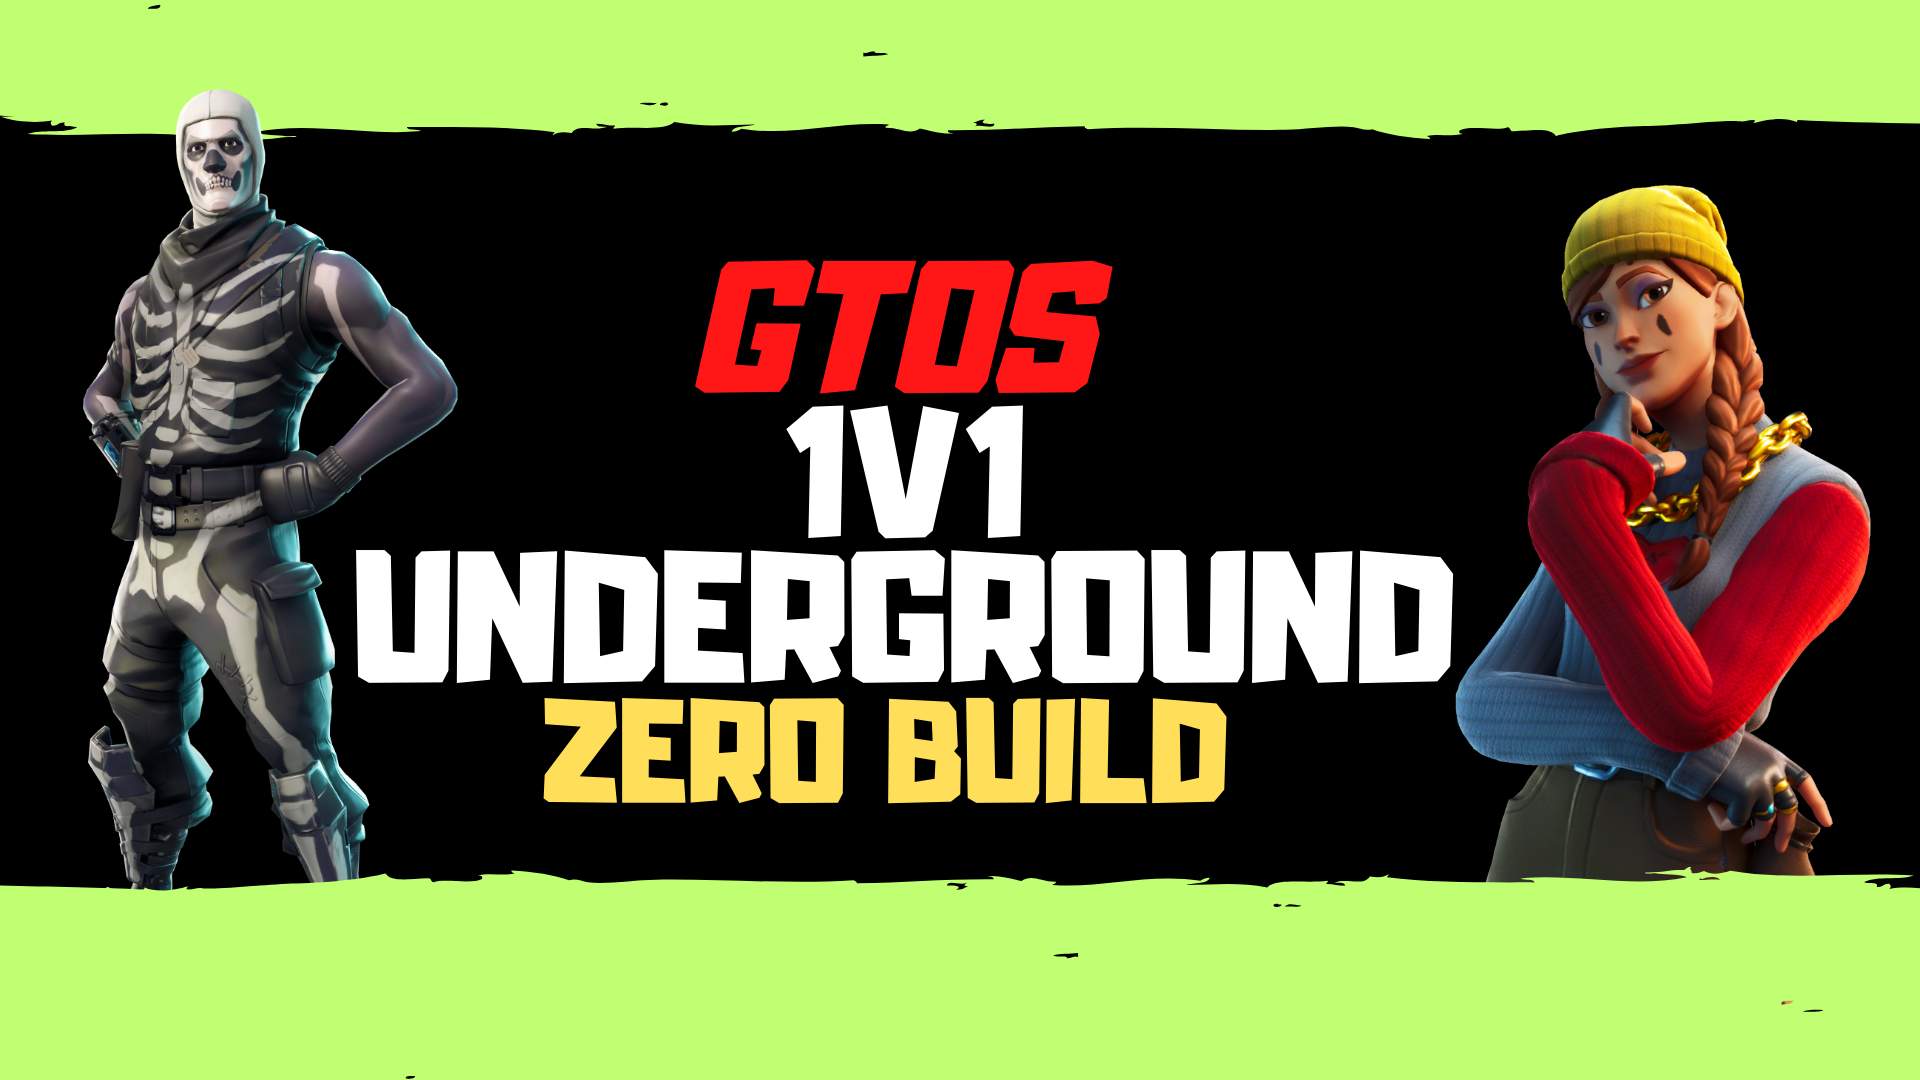 GTOS 1V1 UNDERGROUND ZERO BUILD